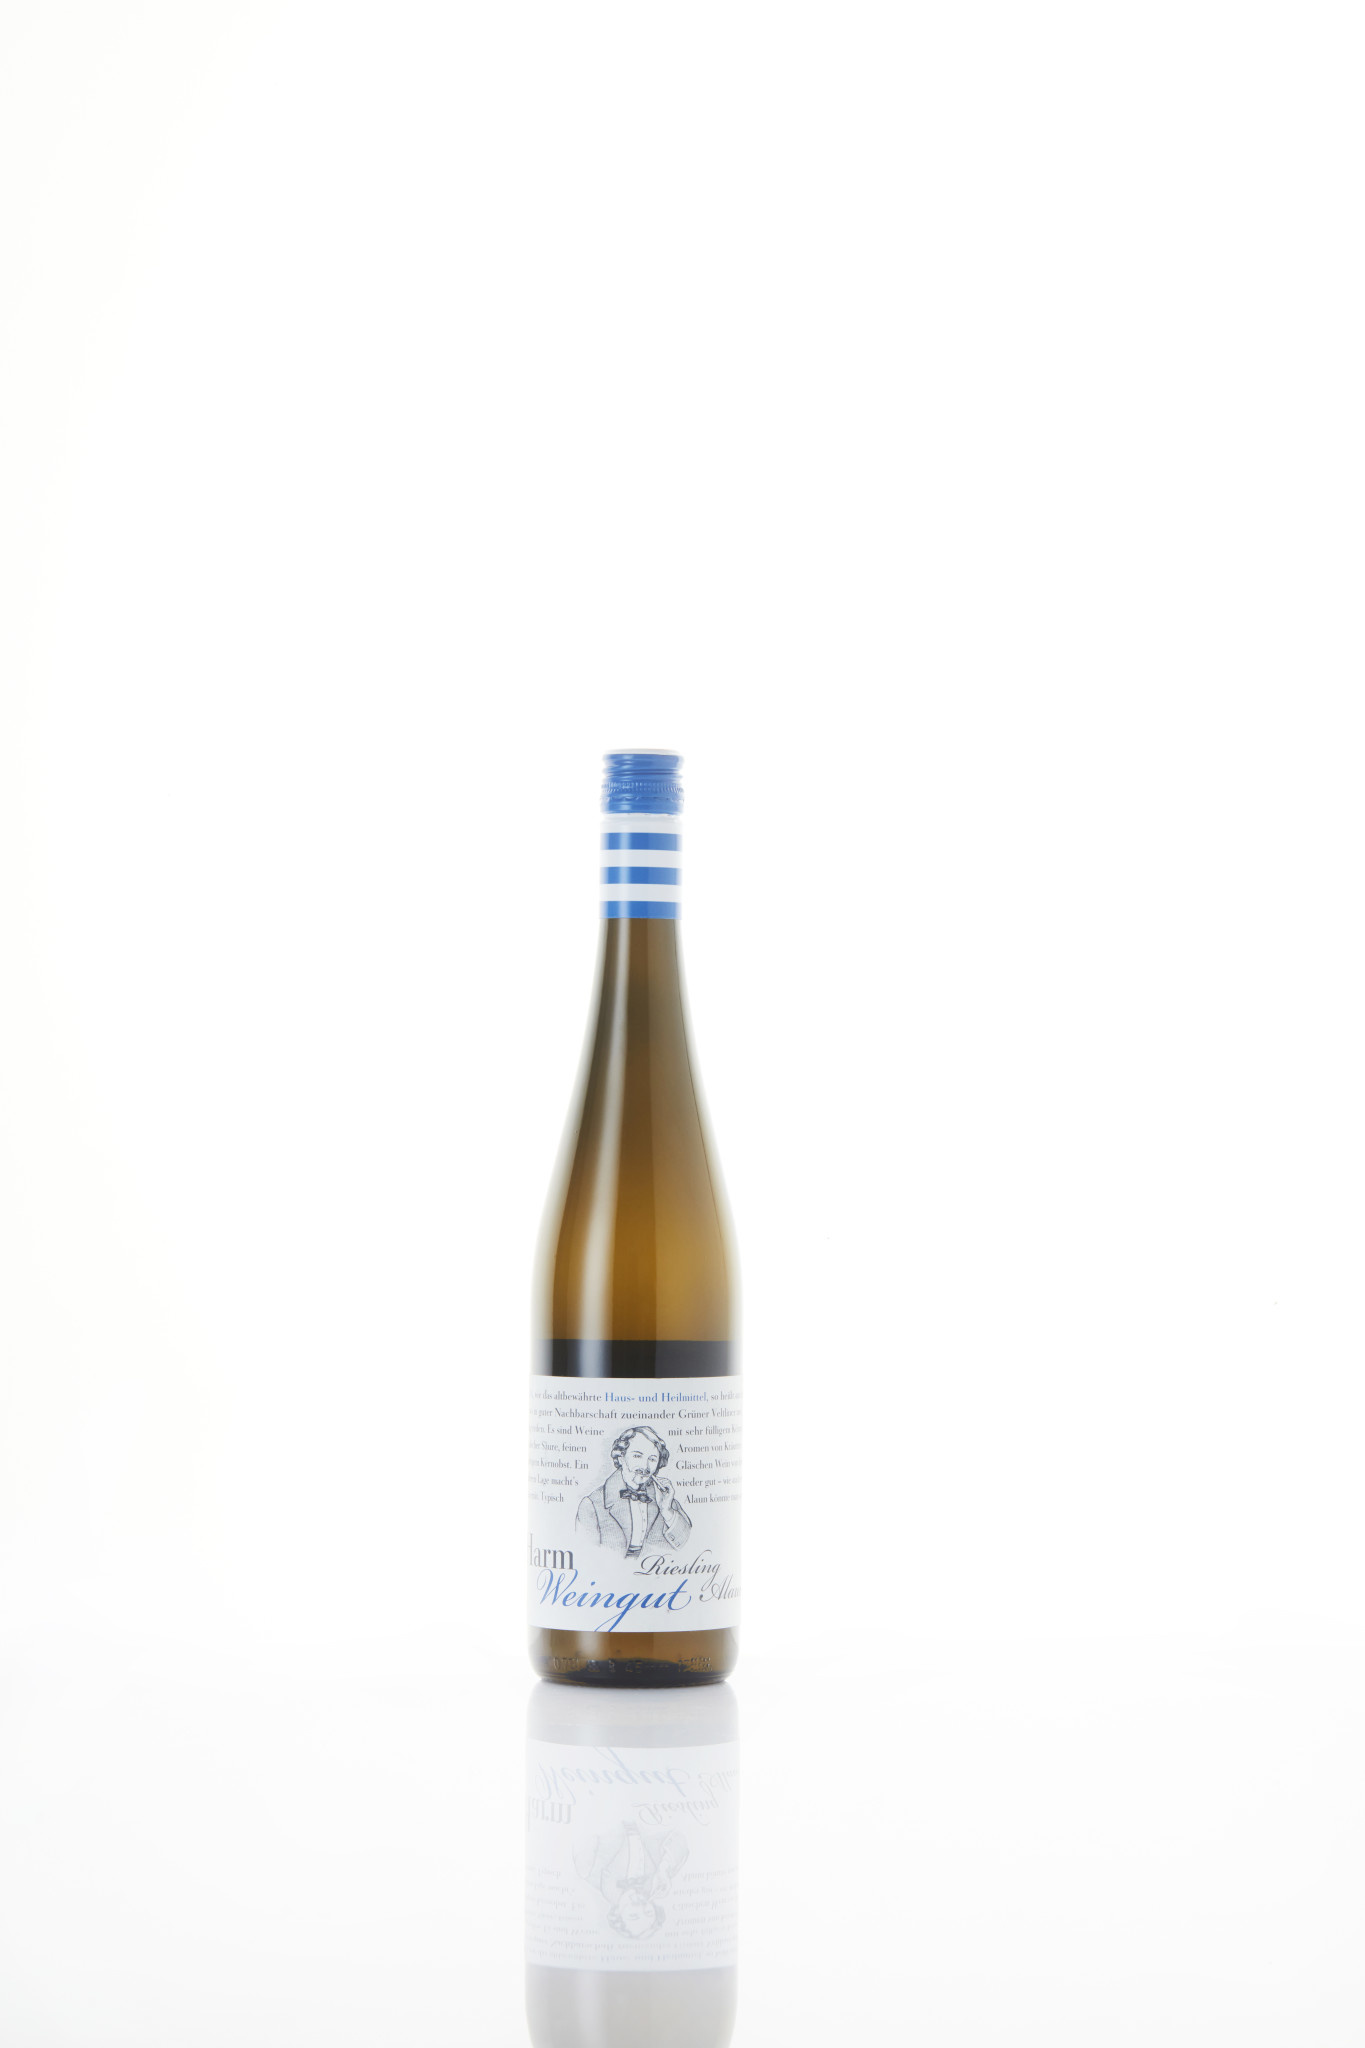 Harwein | Kemptal | Austria Harm Weingut | Riesling DAC I Kremser Alaun 2020 | Östenreichischer Qualitätswein